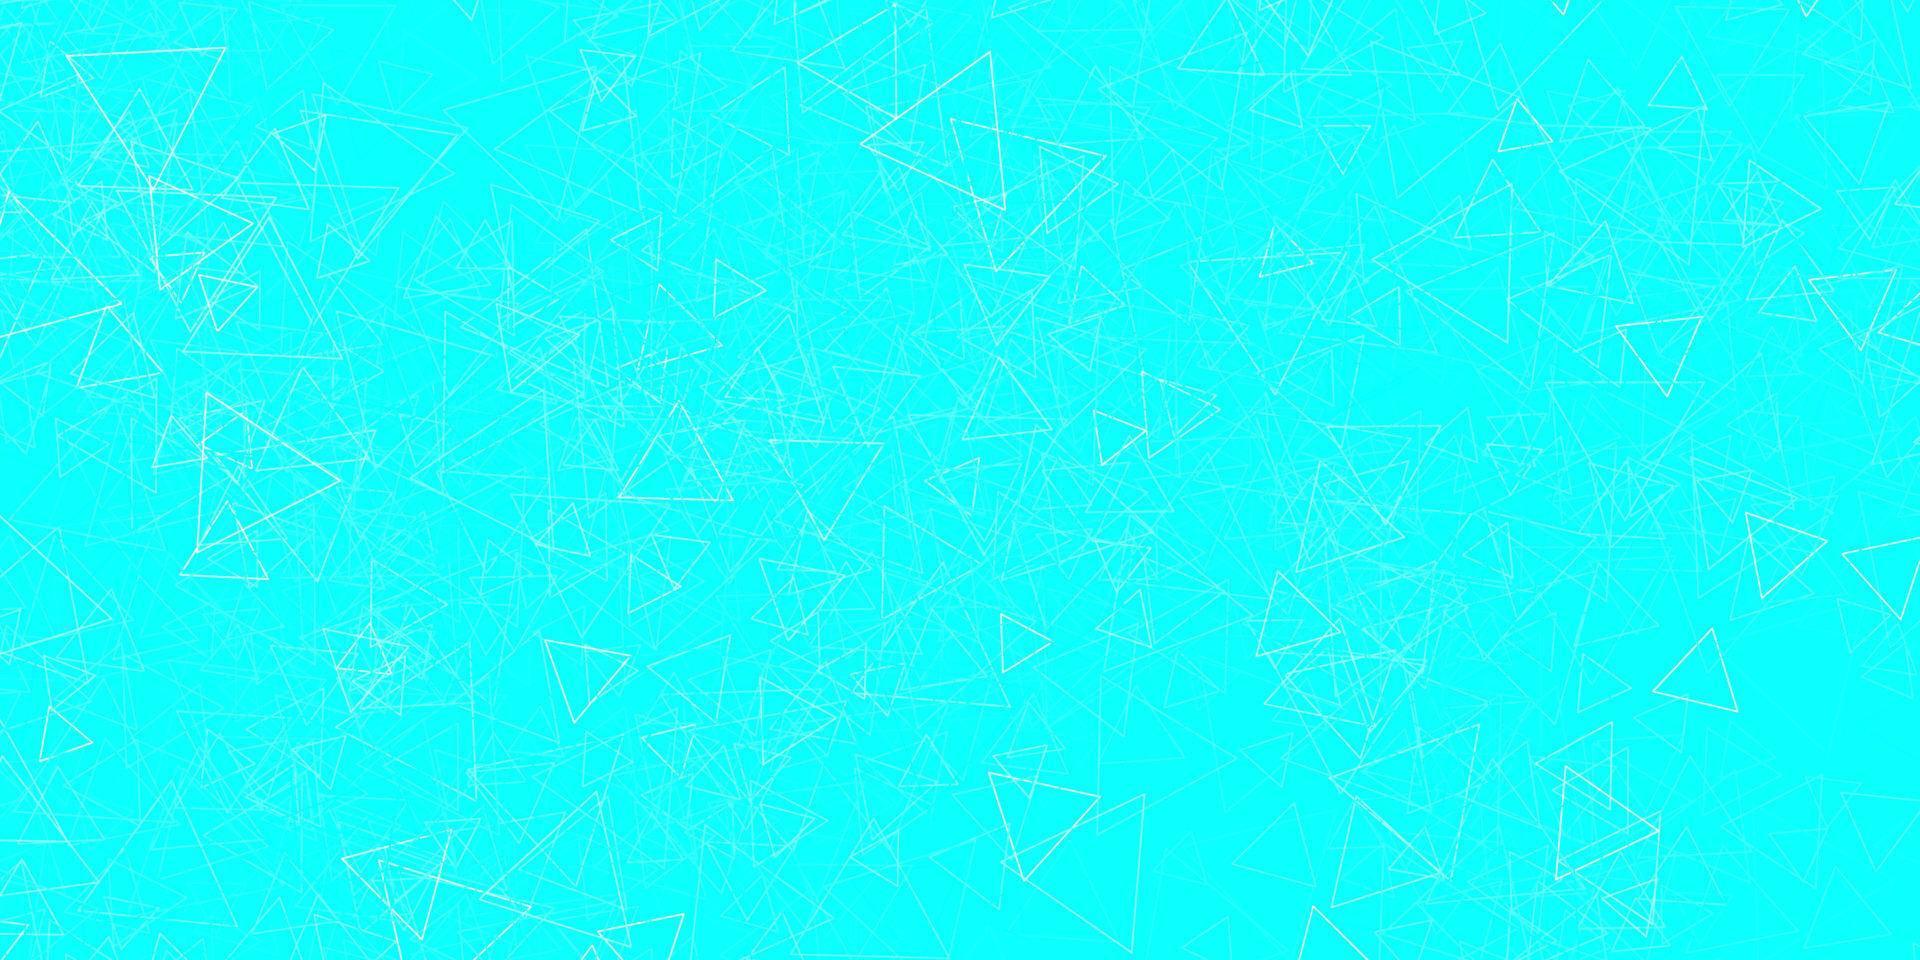 hellblauer, grüner Vektorhintergrund mit Dreiecken, Linien. vektor